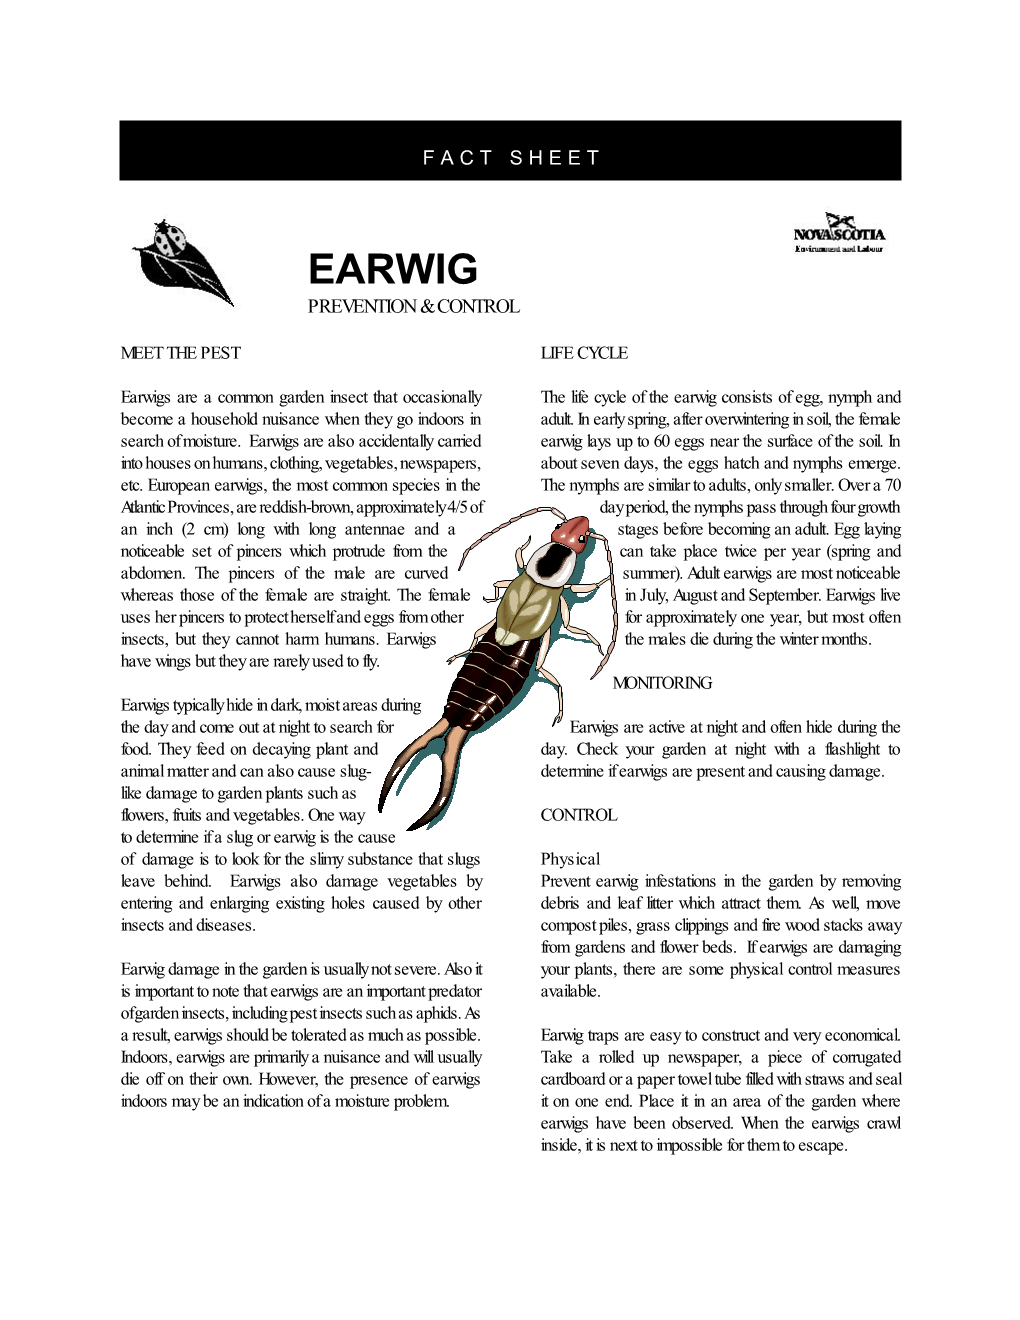 Earwig Prevention & Control